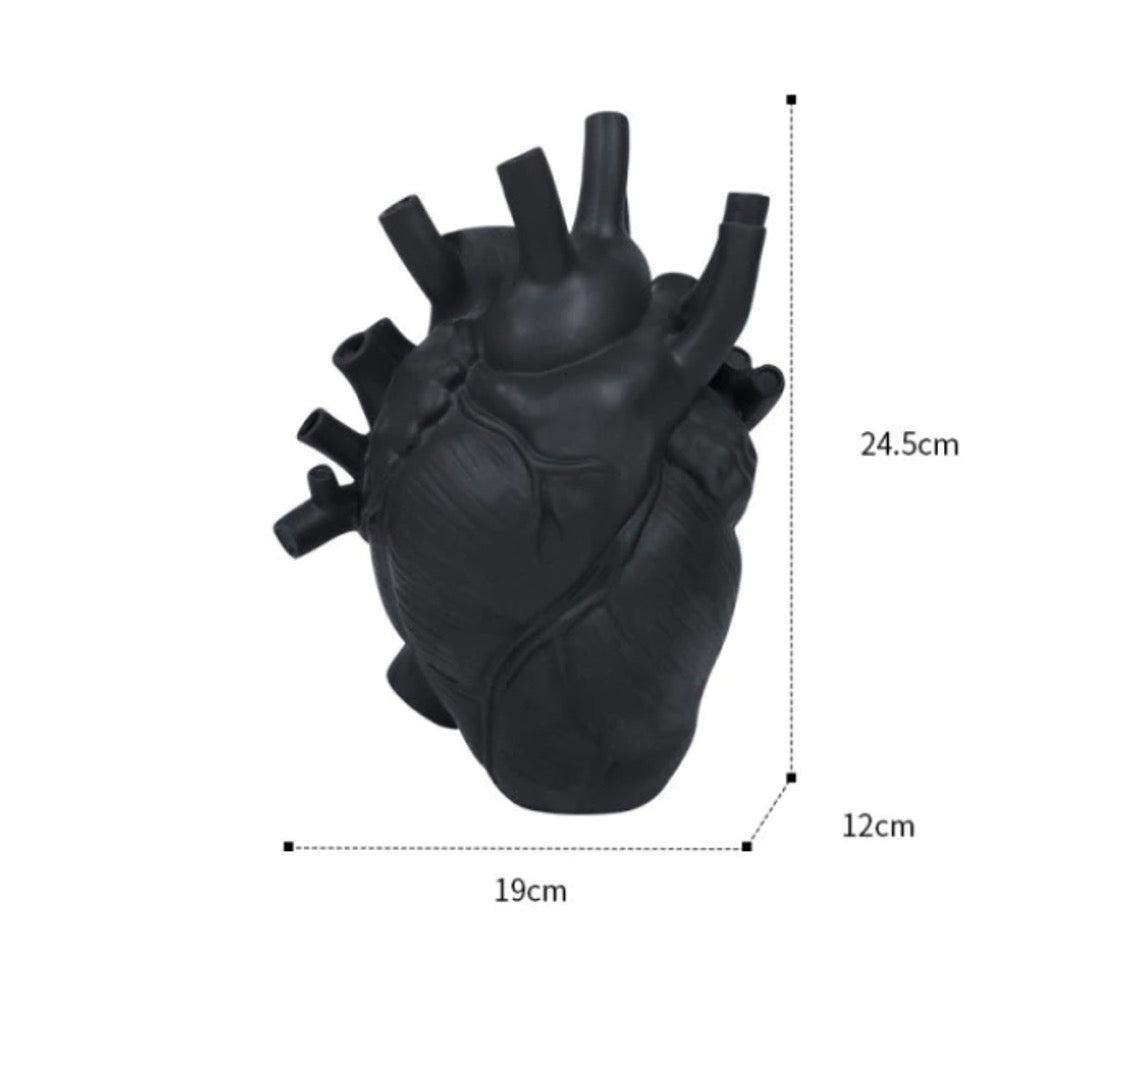 Anatomical heart vase in black.